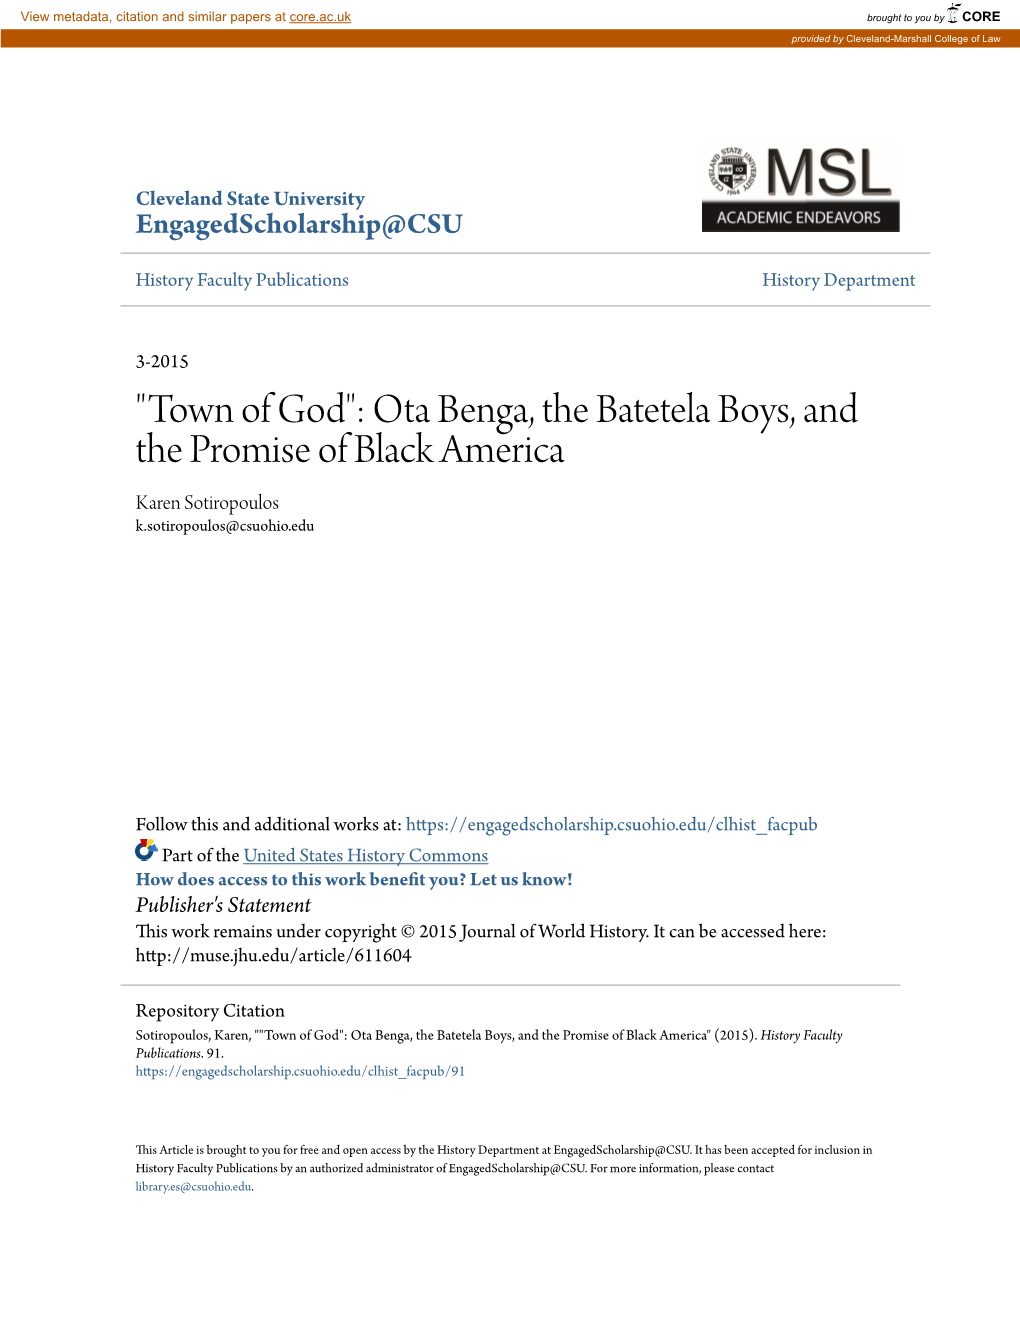 Ota Benga, the Batetela Boys, and the Promise of Black America Karen Sotiropoulos K.Sotiropoulos@Csuohio.Edu